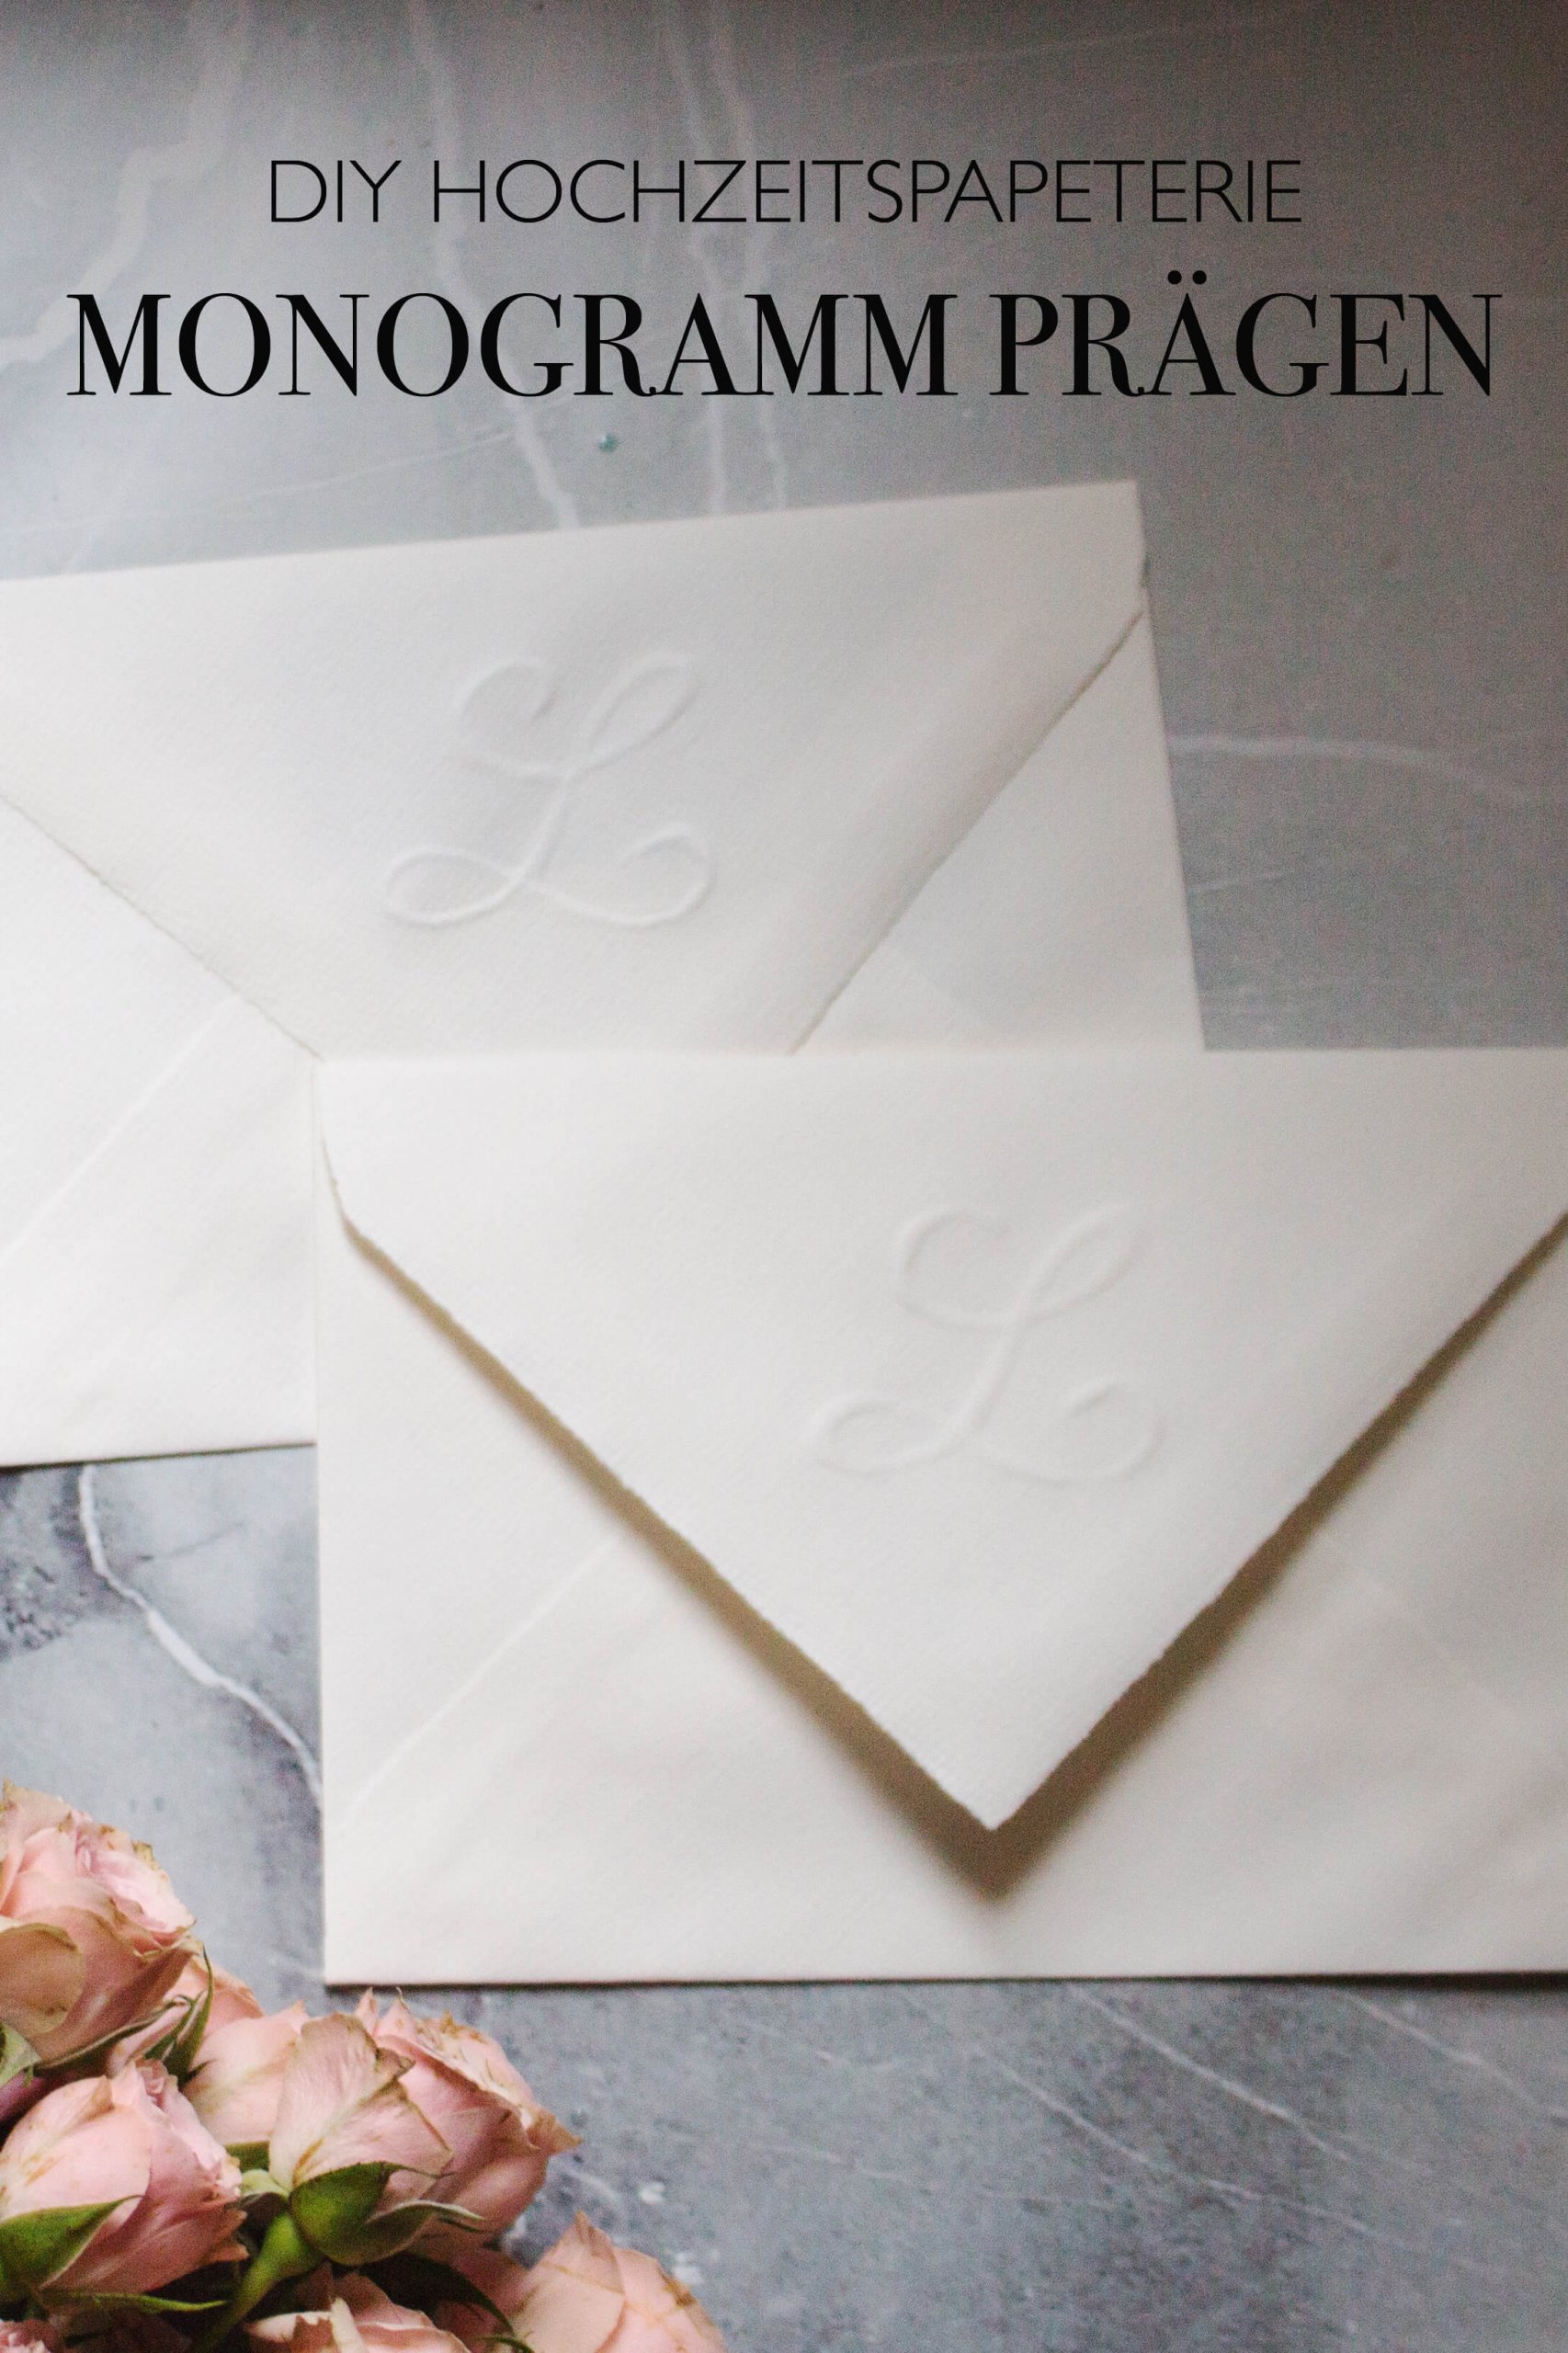 DIY Hochzeit Einladungskarten selber machen Briefumschlag Monogramm prägen